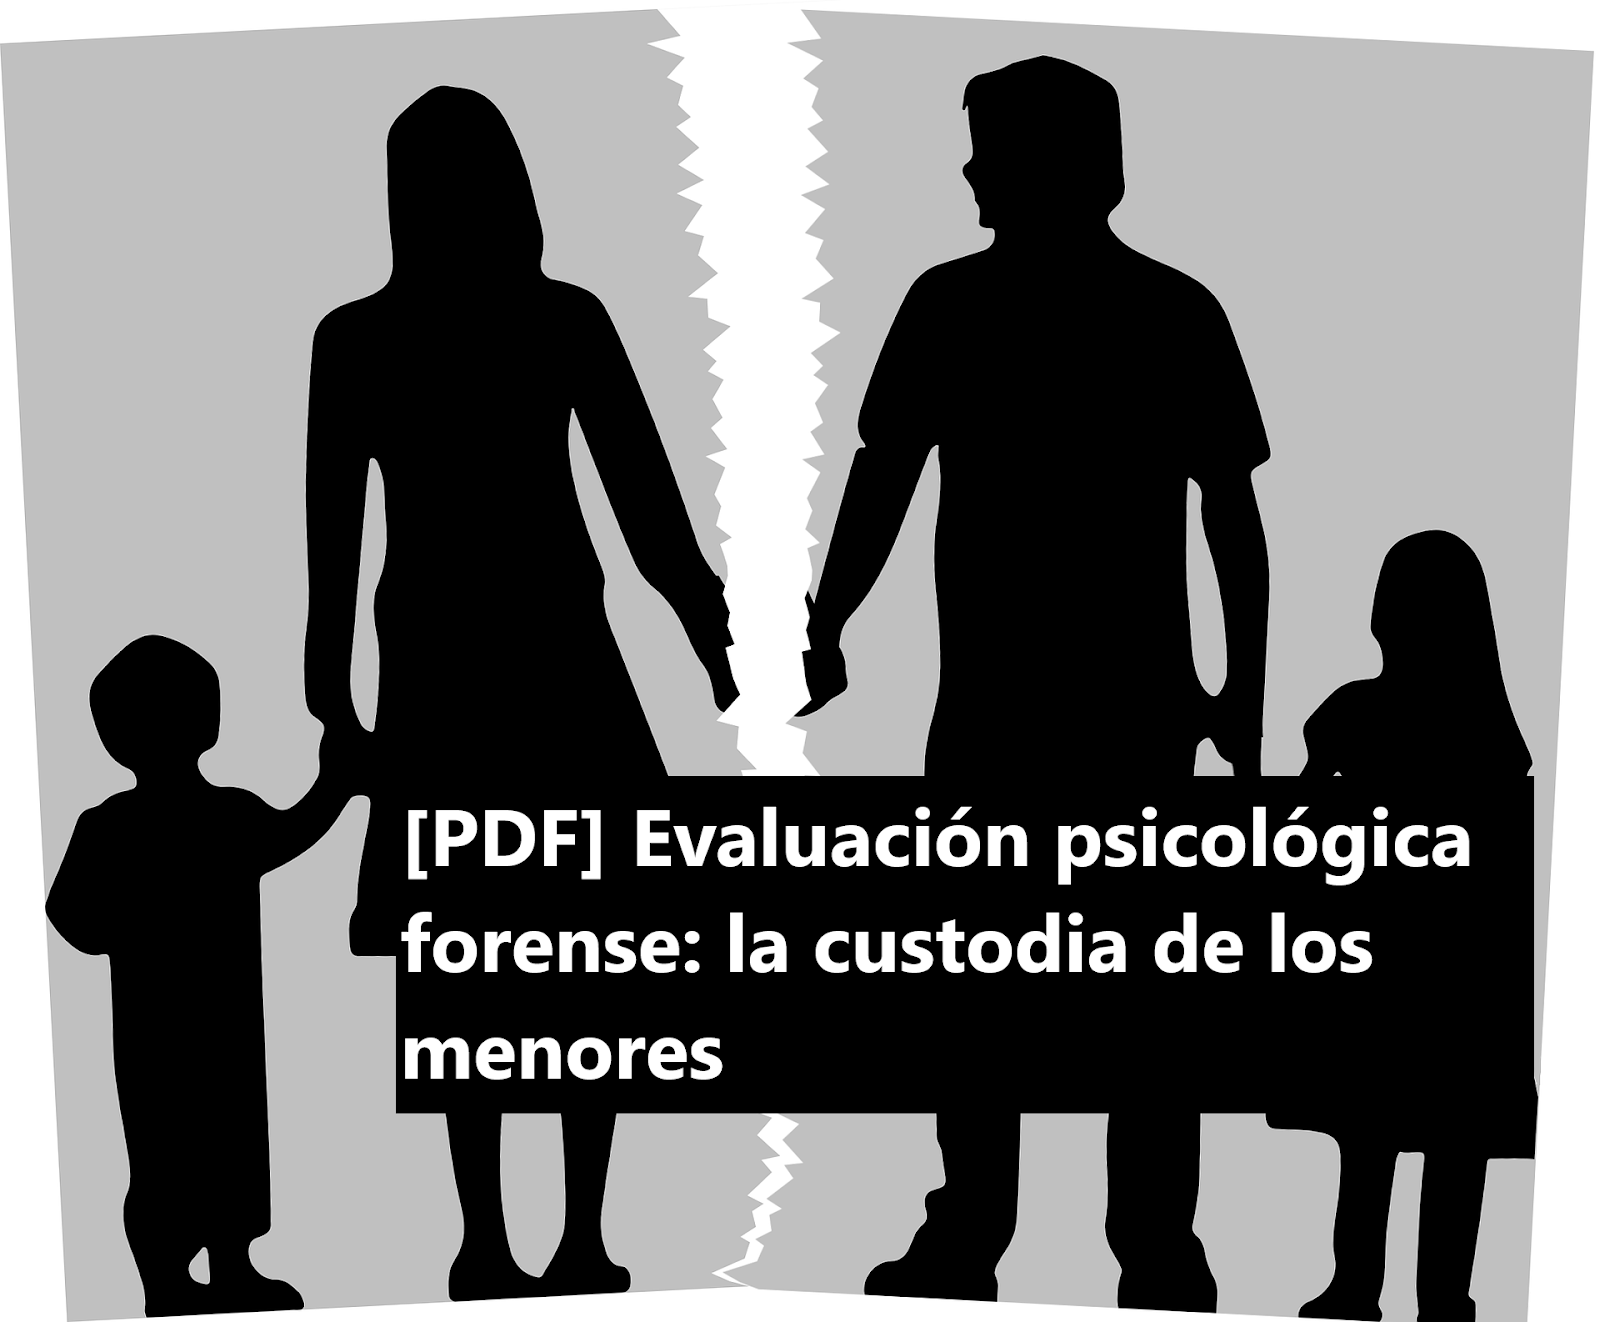 [PDF] Evaluación psicológica forense: la custodia de los menores.